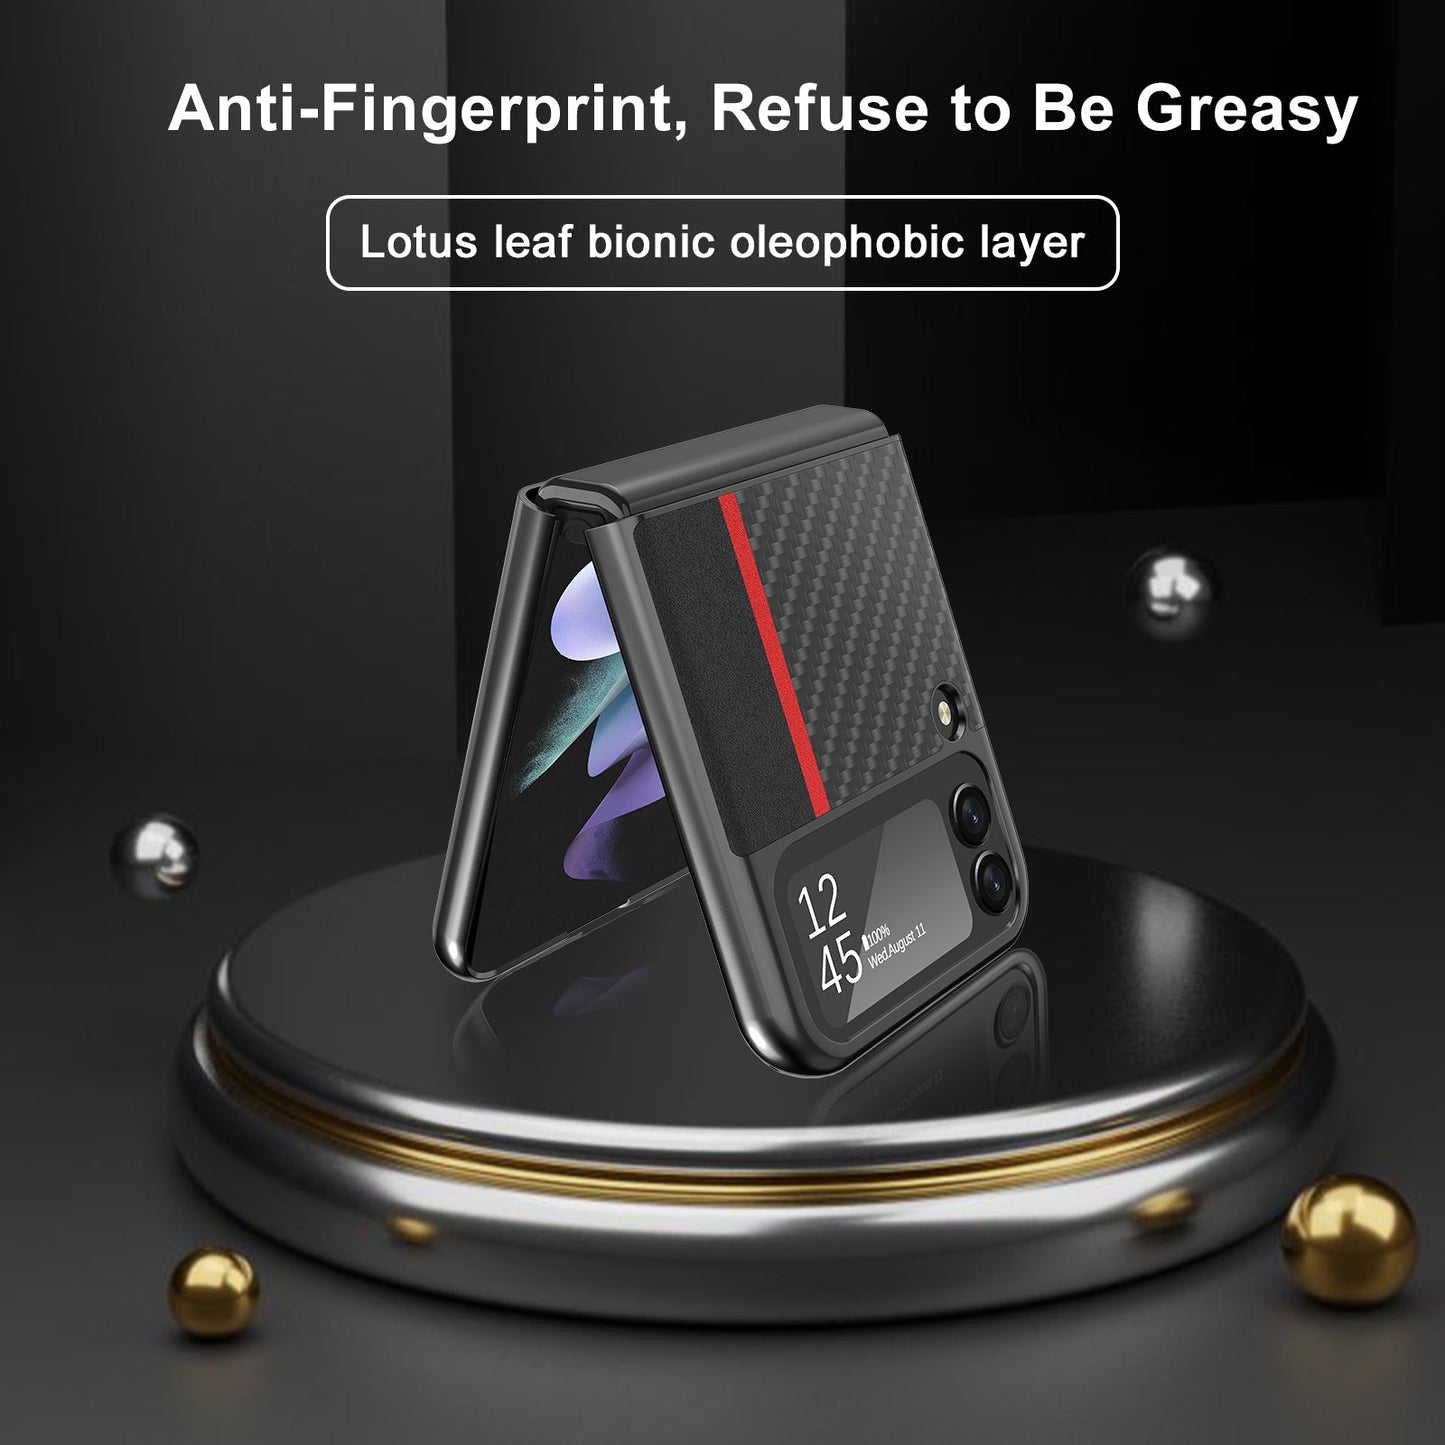 Ultradünne Hülle im Carbonfaser-Stil für das Samsung Galaxy Z Flip 